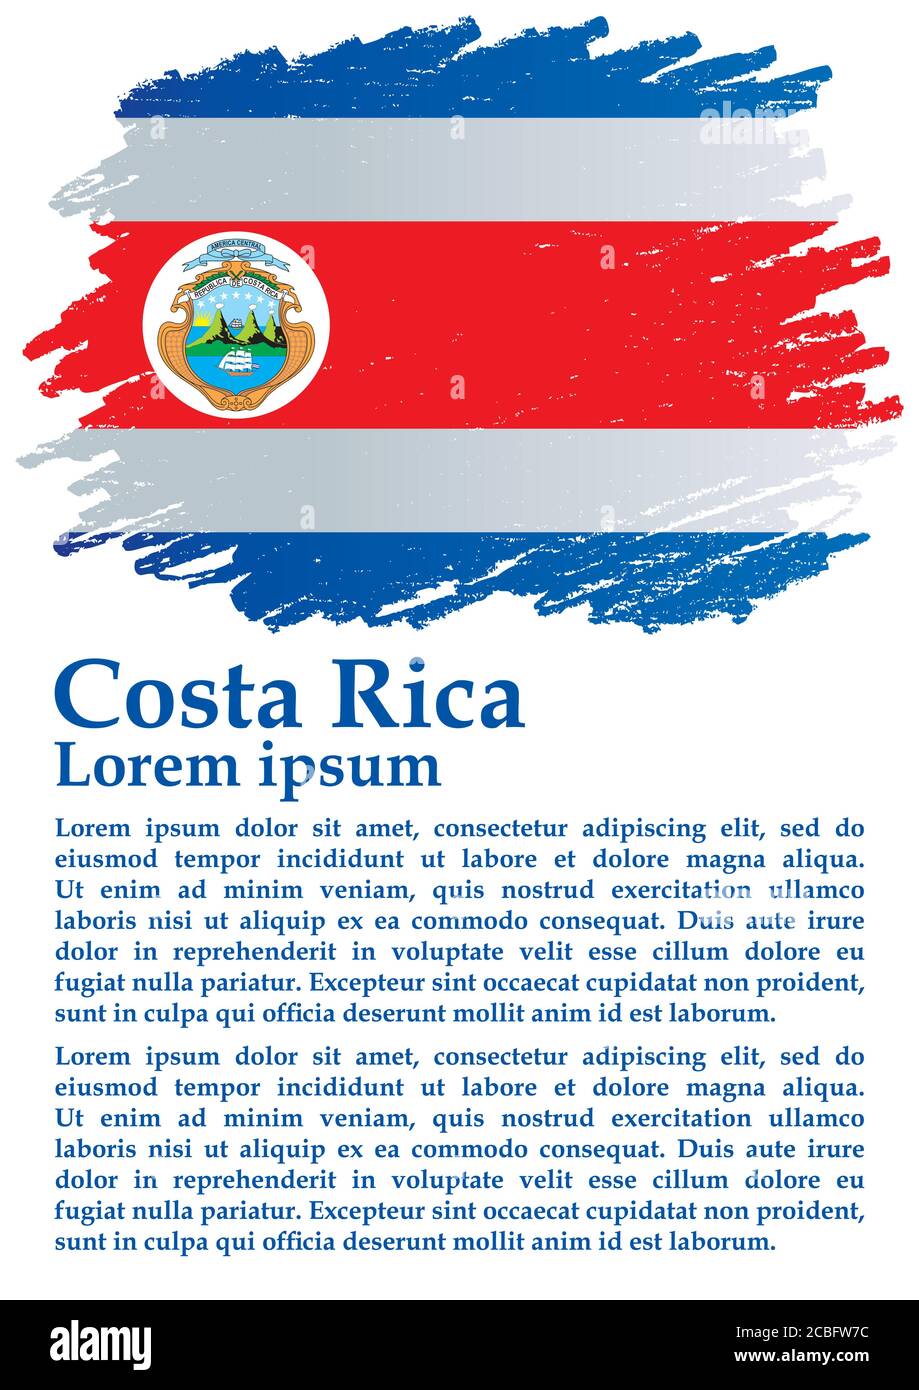 Flagge von Costa Rica, Republik Costa Rica. Vorlage für Award Design, ein offizielles Dokument mit der Flagge von Costa Rica. Stock Vektor